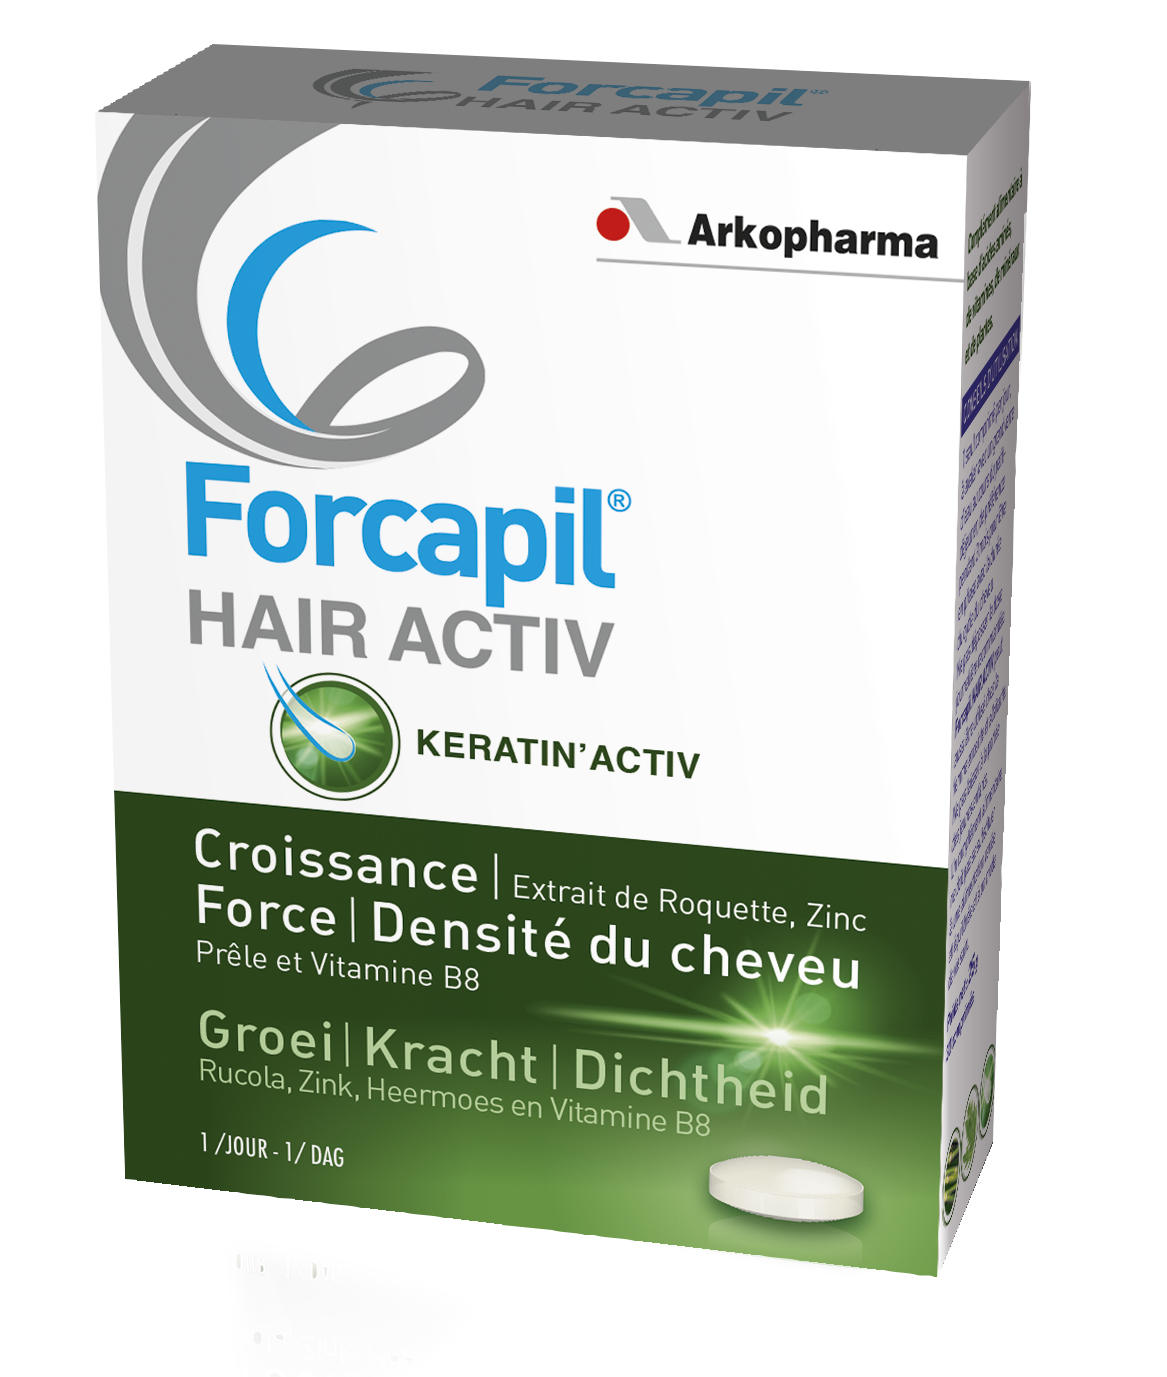 FORCAPIL Hair Activ – Farmaciile somesan